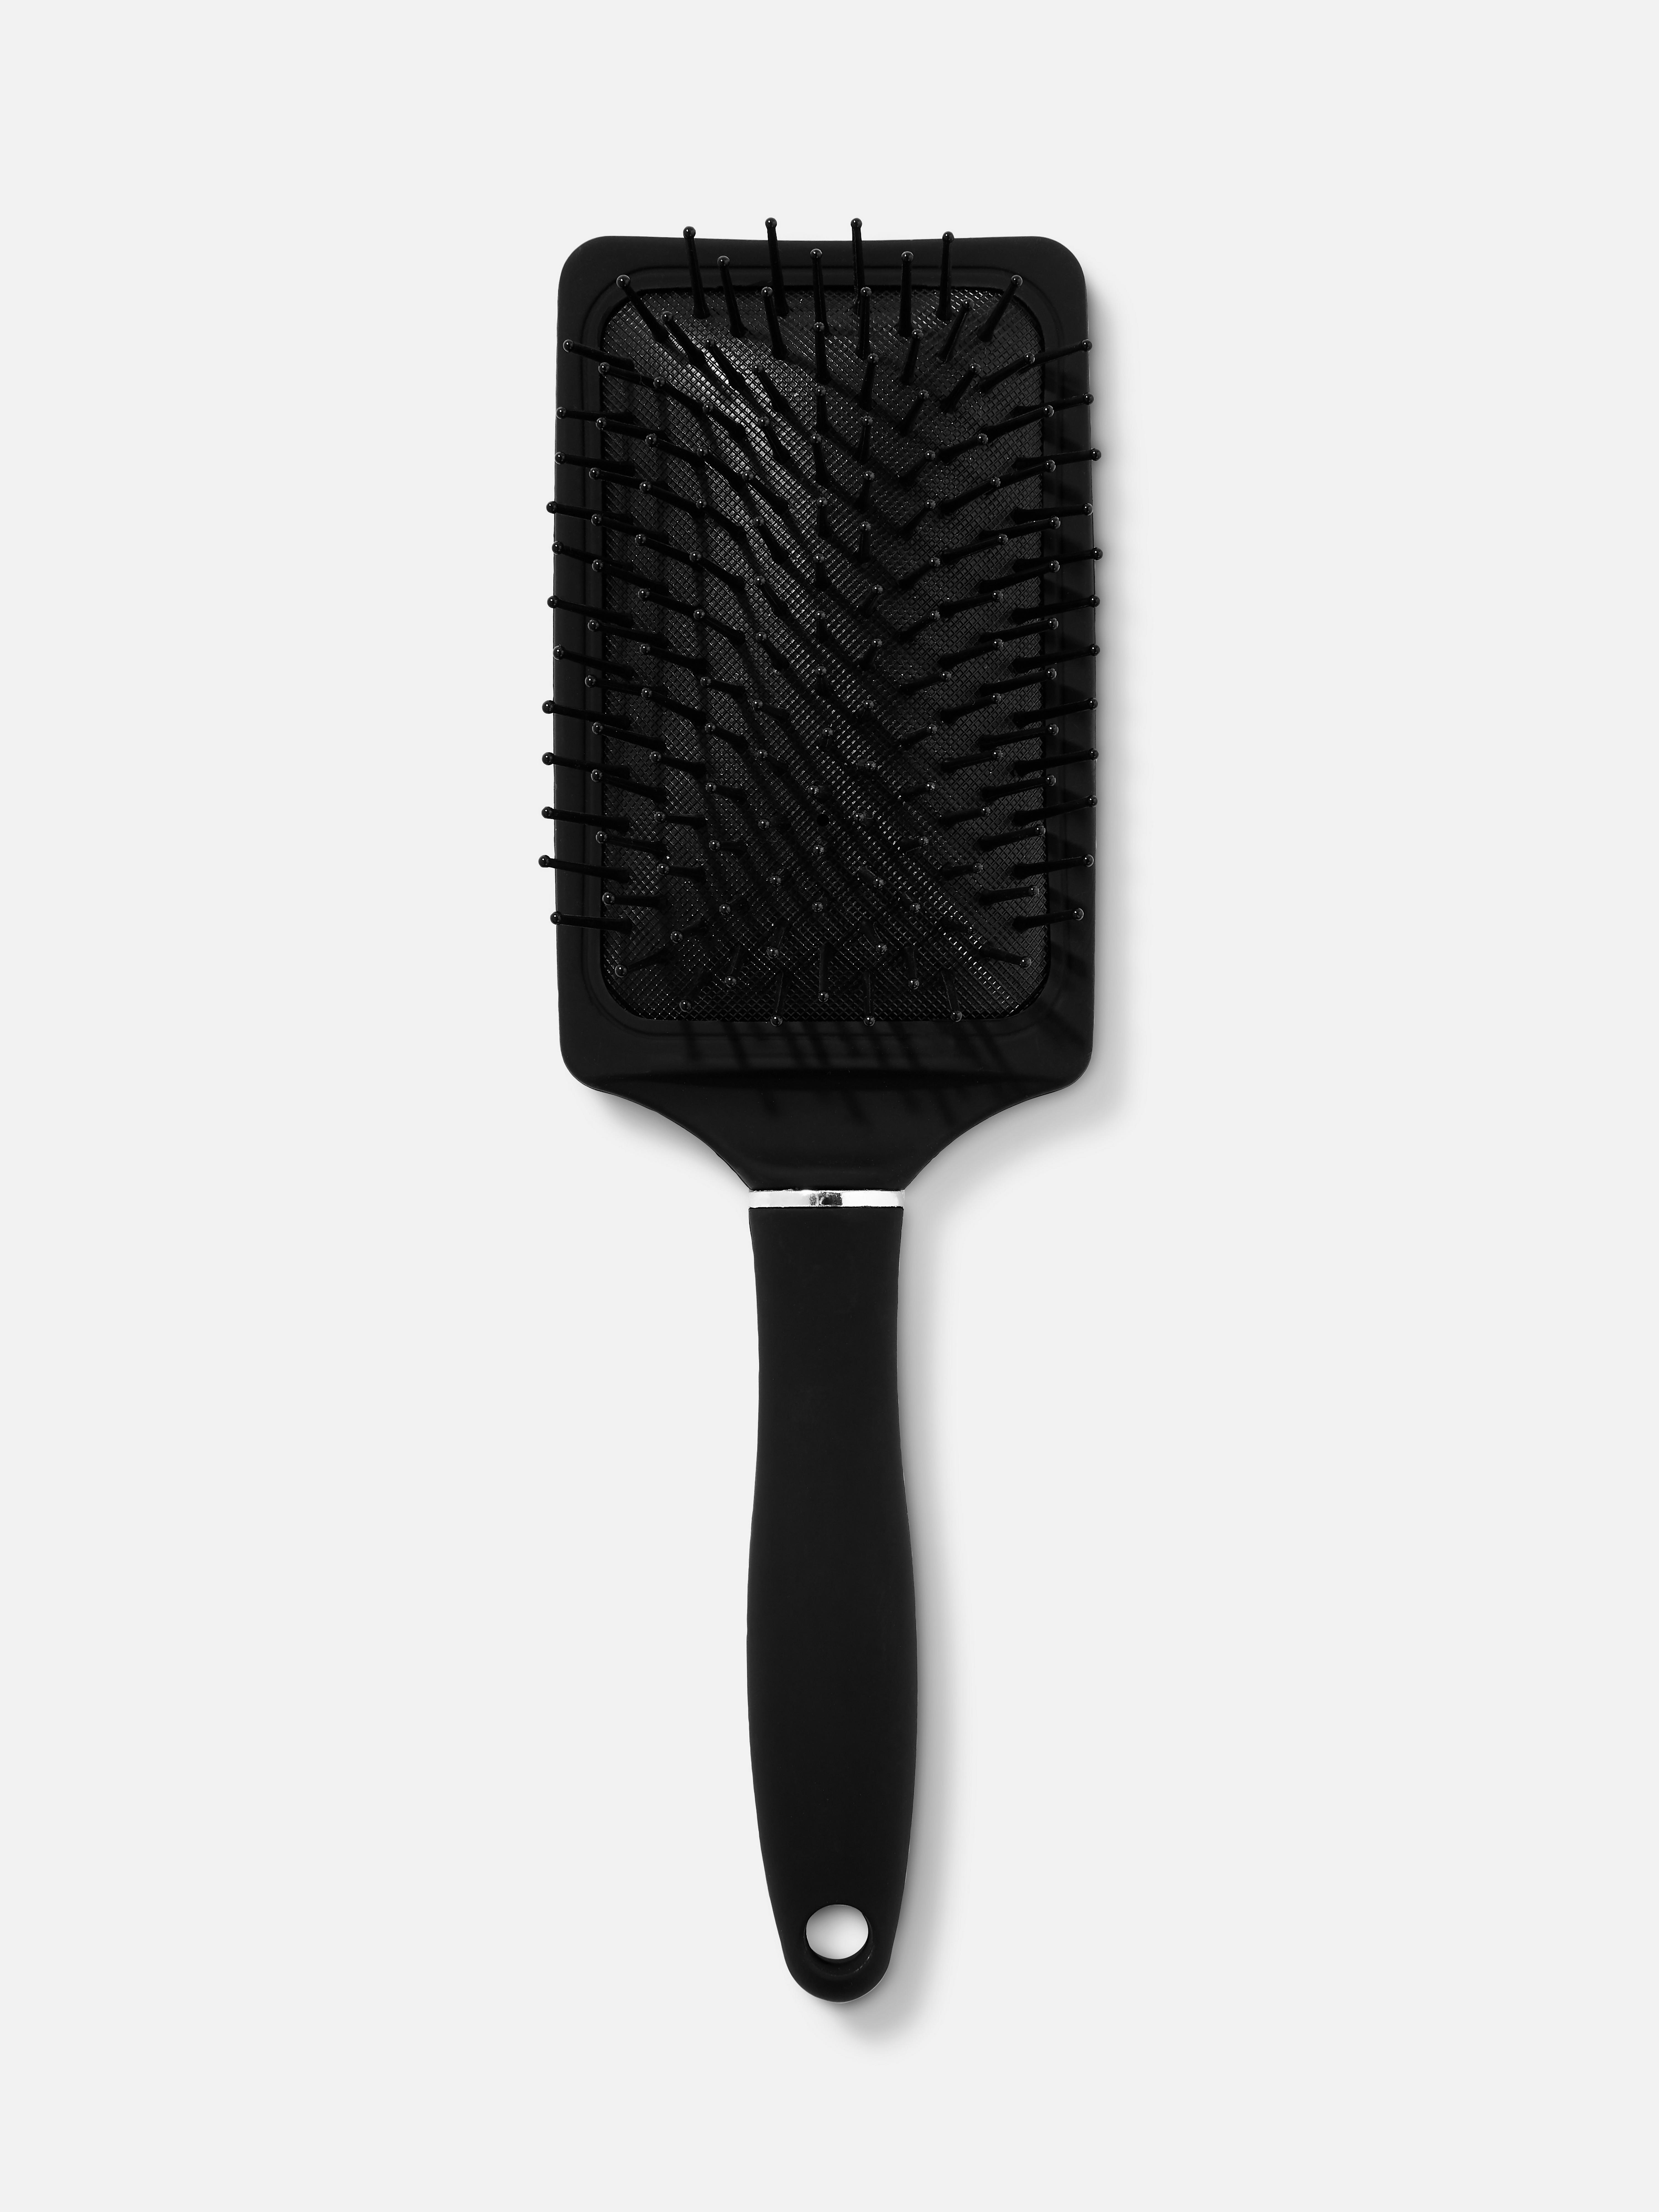 Large Paddle Hairbrush Black 2